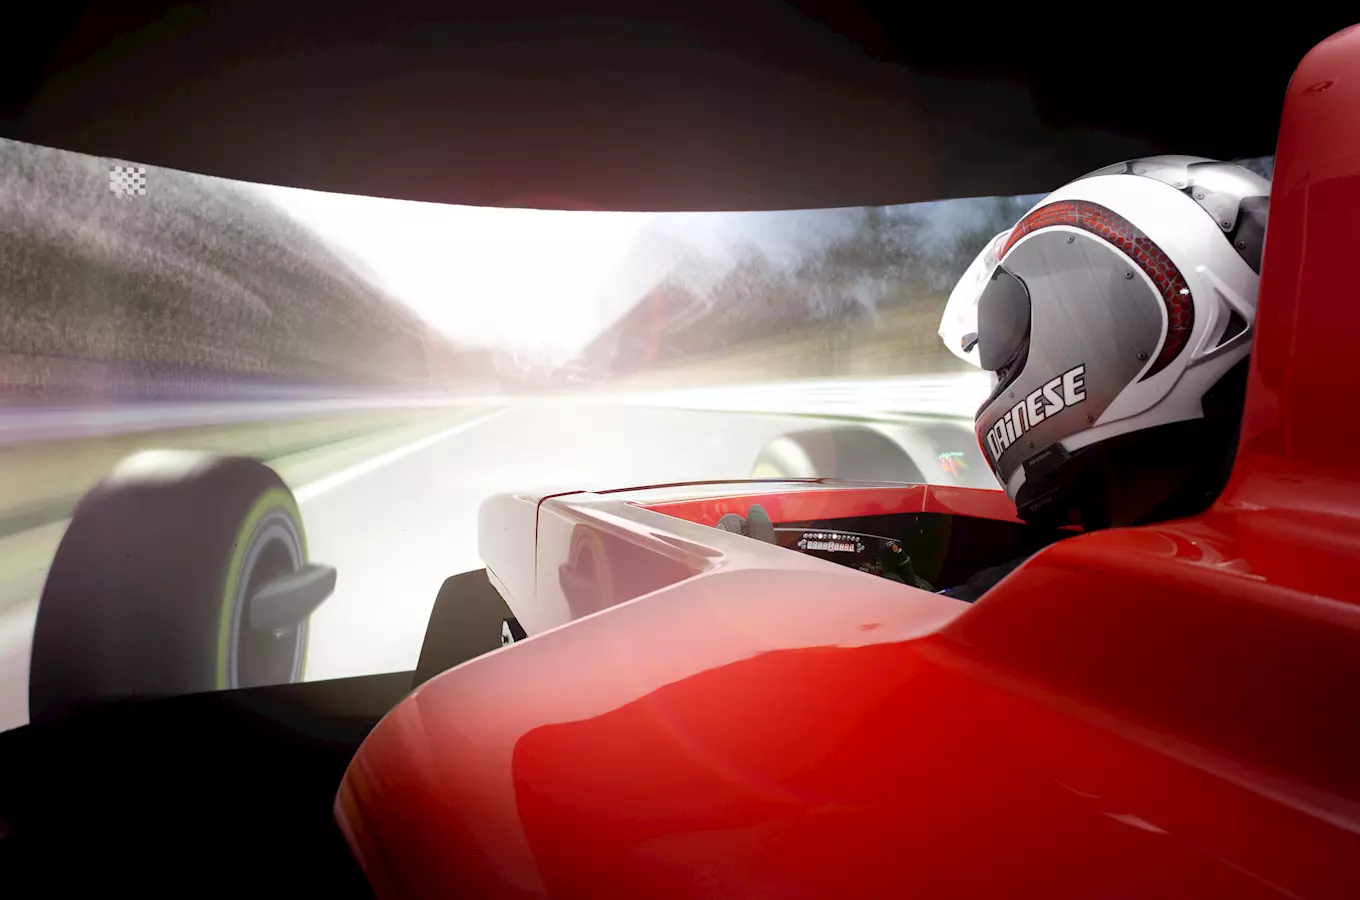 Vyzkoušejte si poslední březnovou neděli řízení Formule 1 na speciálních simulátorech